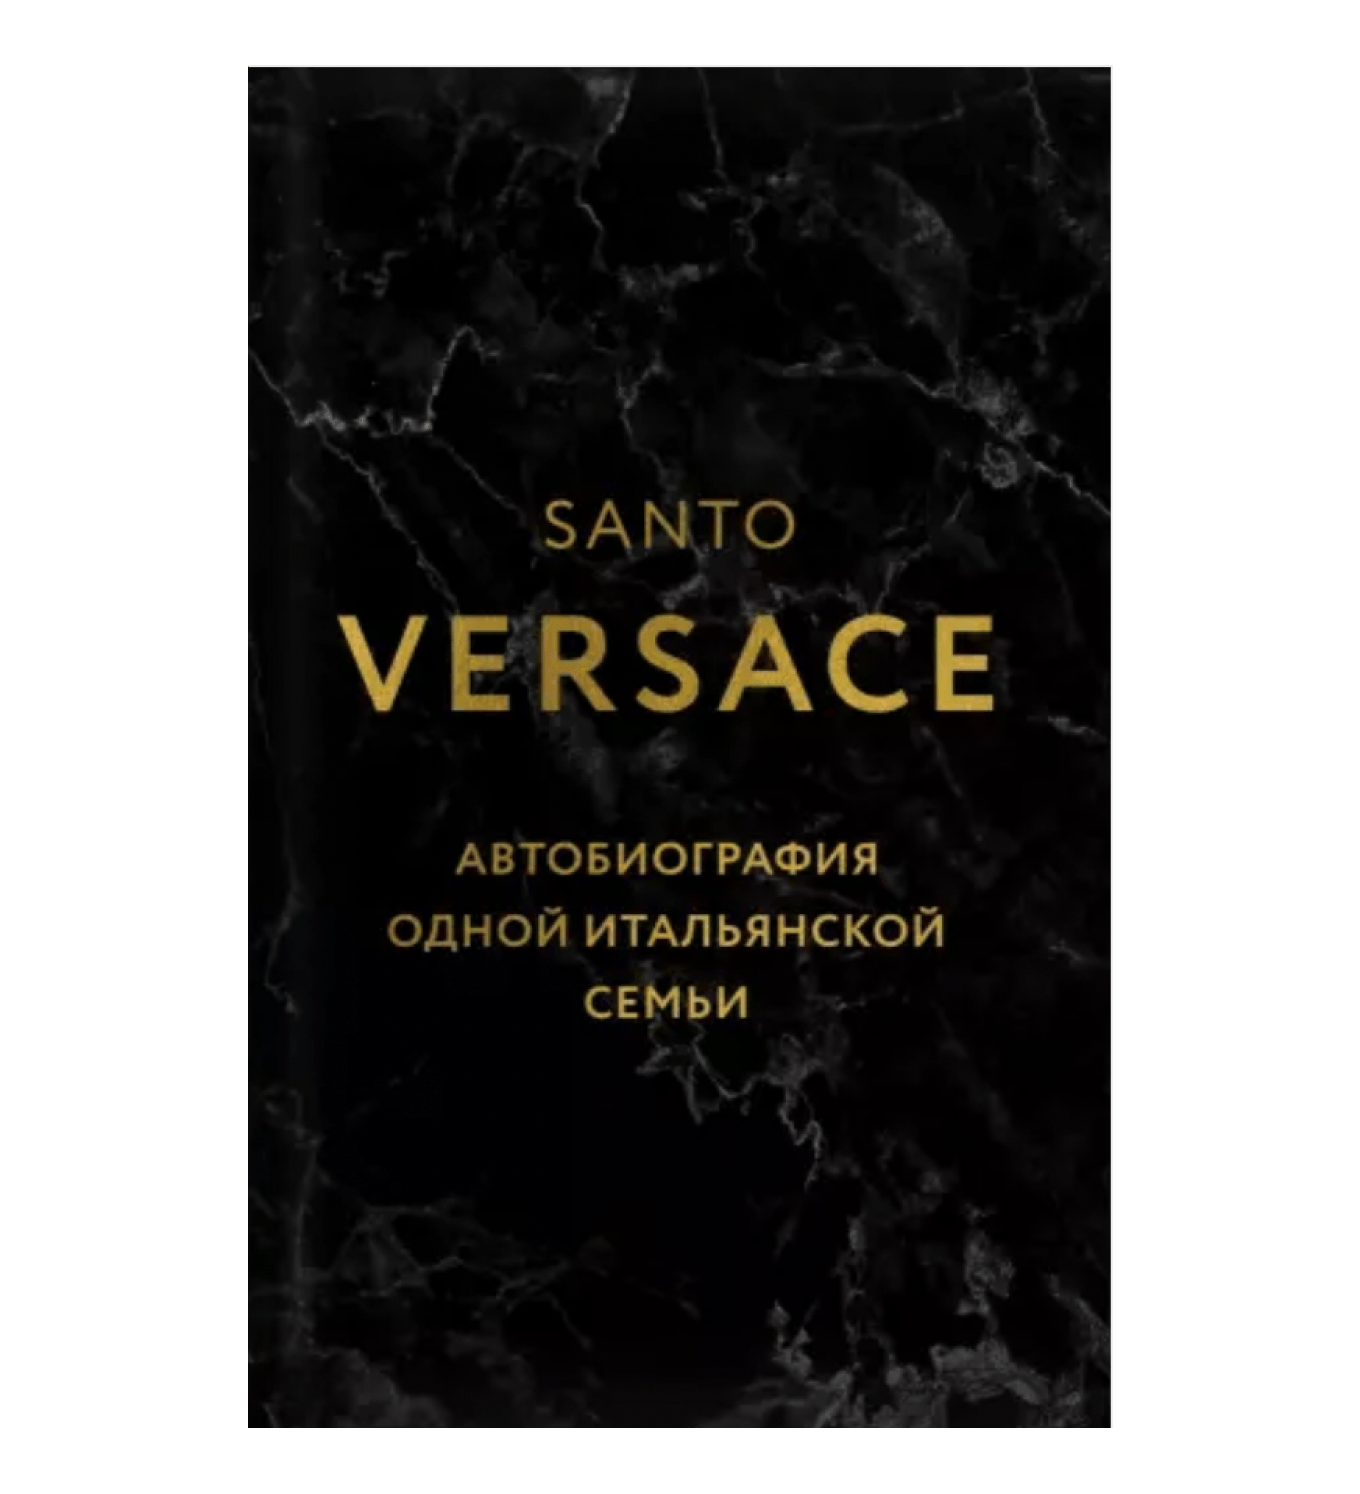 Обложка книги Санто Версаче «Версаче. Автобиография одной итальянской семьи»